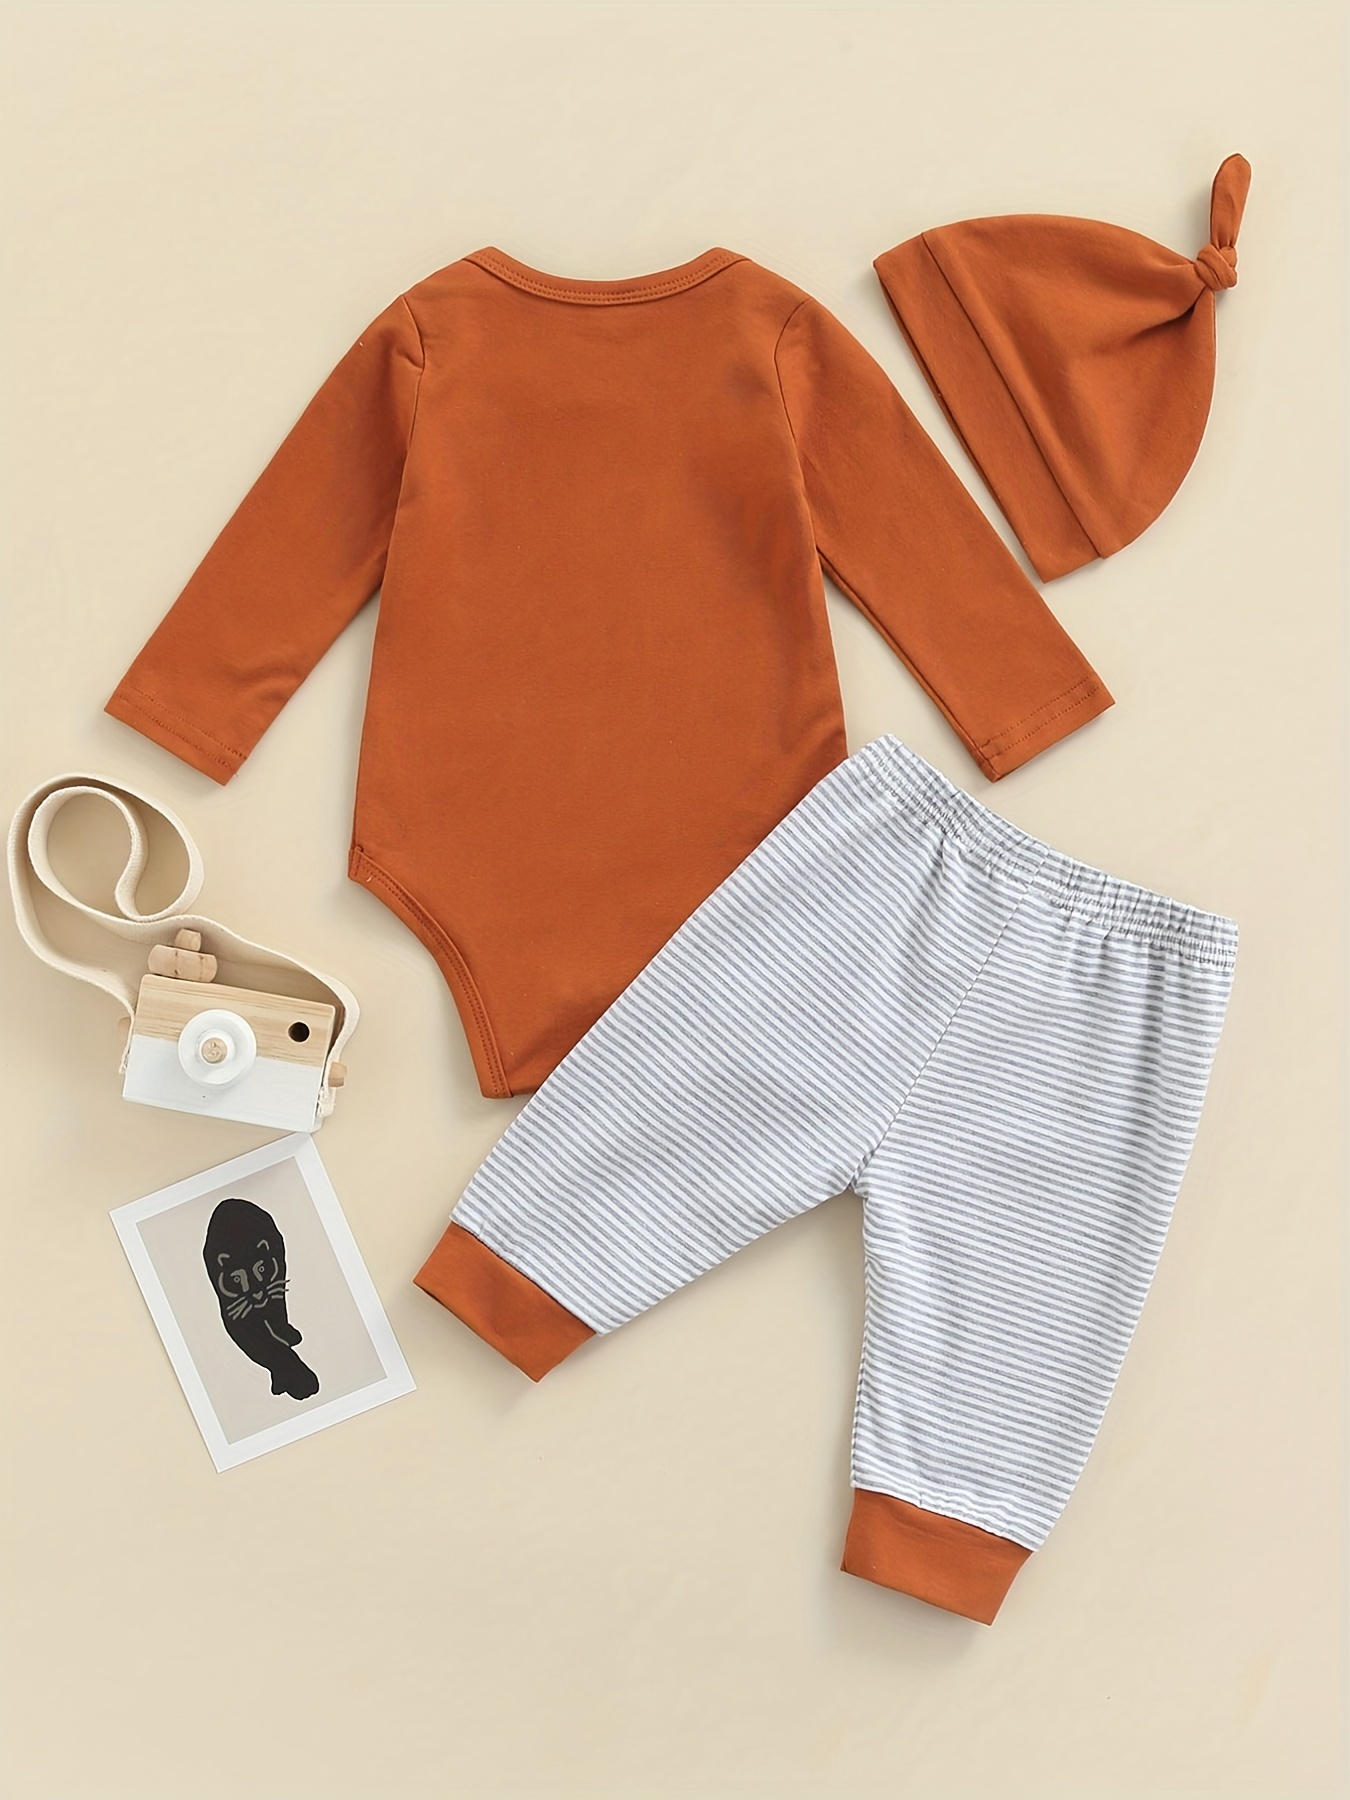 Bebé recién nacido en ropa naranja. un niño nacido en otoño